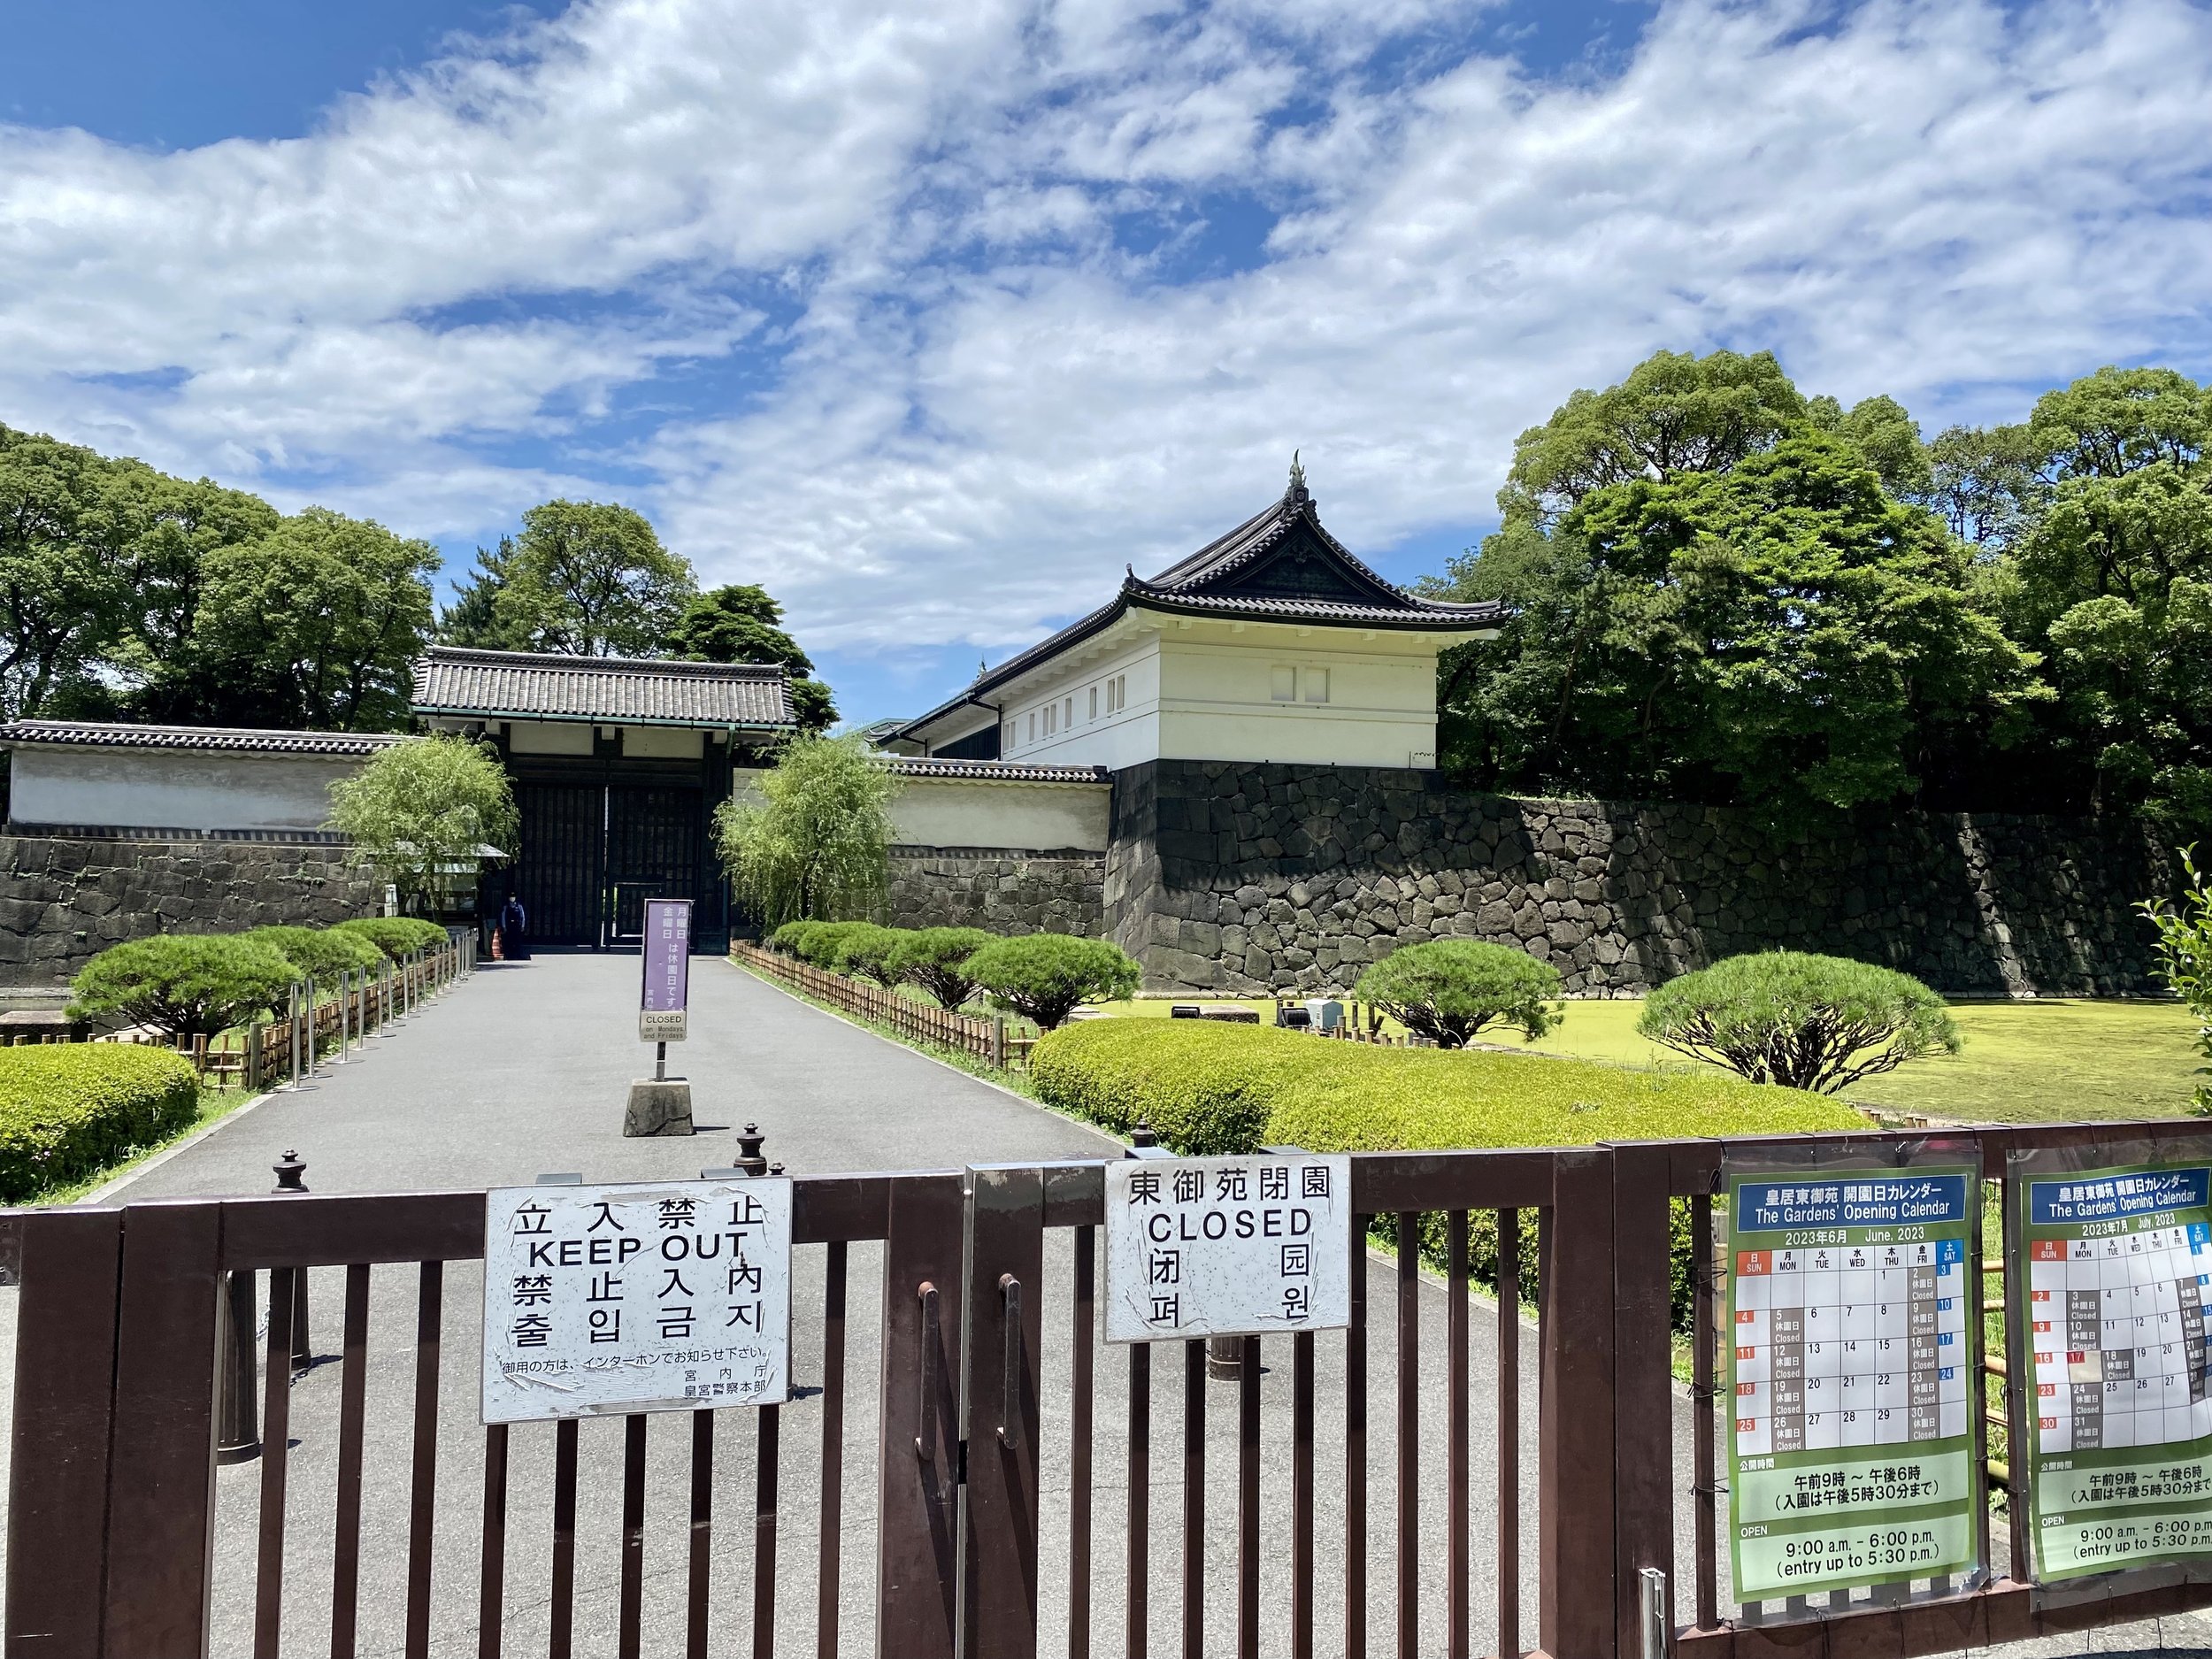 Main Diplomatic Gates at Imperial Palace